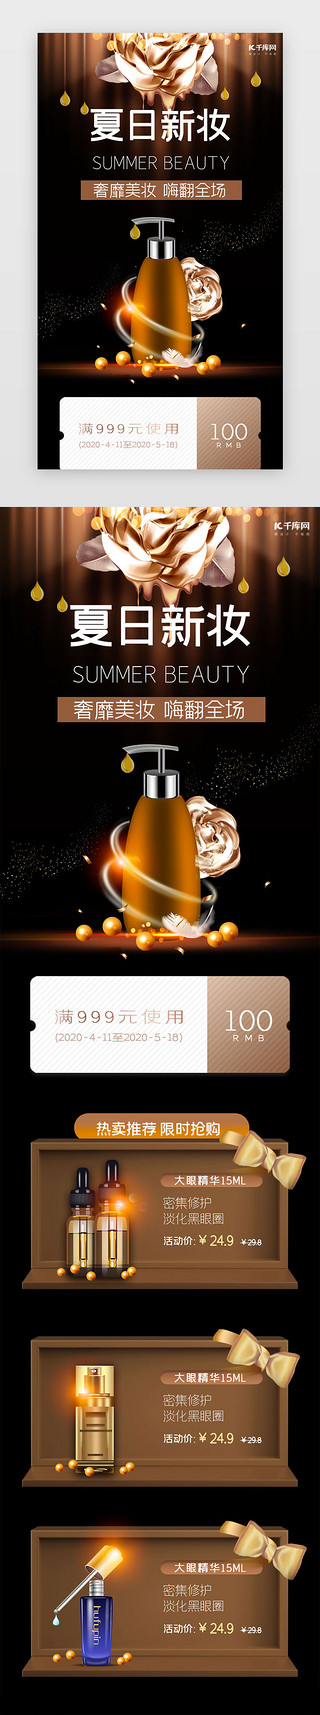 美夏UI设计素材_棕色简约夏日美妆促销h5长图电商